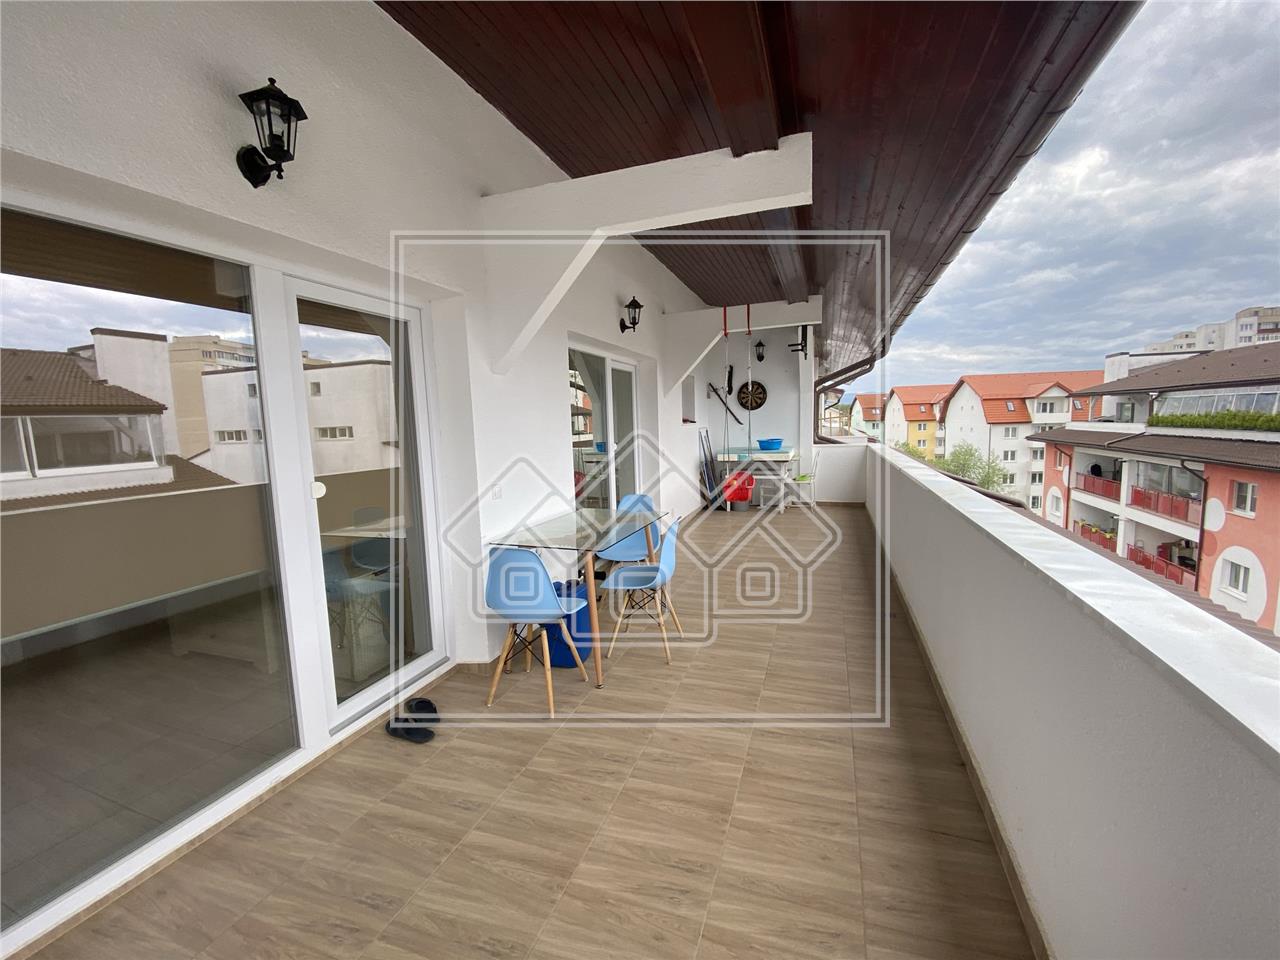 Penthouse zum Verkauf in Sibiu - 101 nutzbare qm - 2 Terrassen